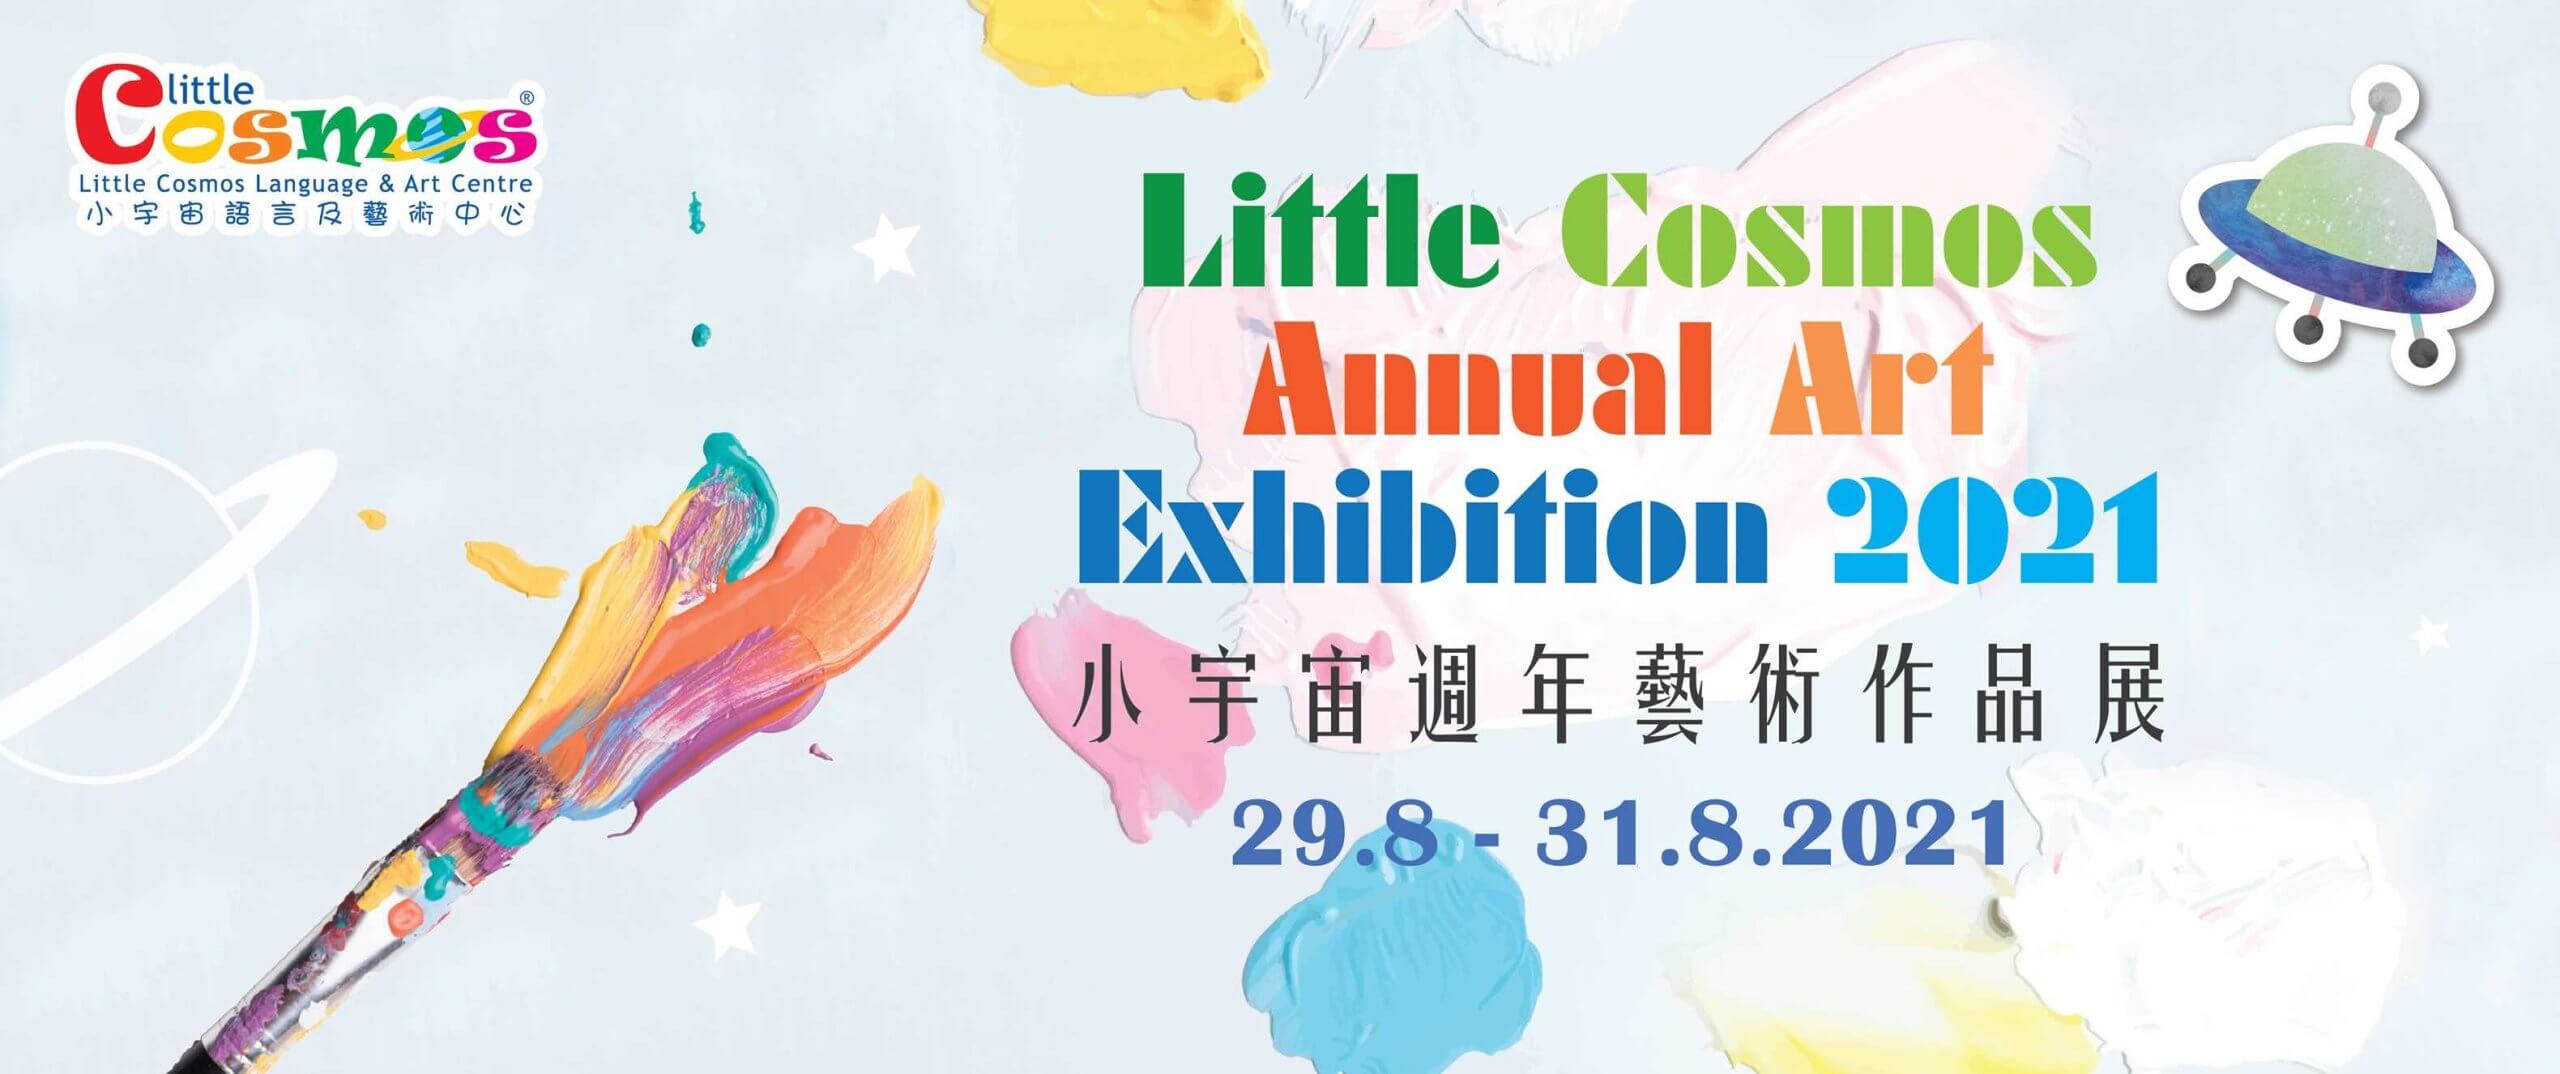 小宇宙語言及藝術中心 Little Cosmos的特許經營香港區加盟店項目7